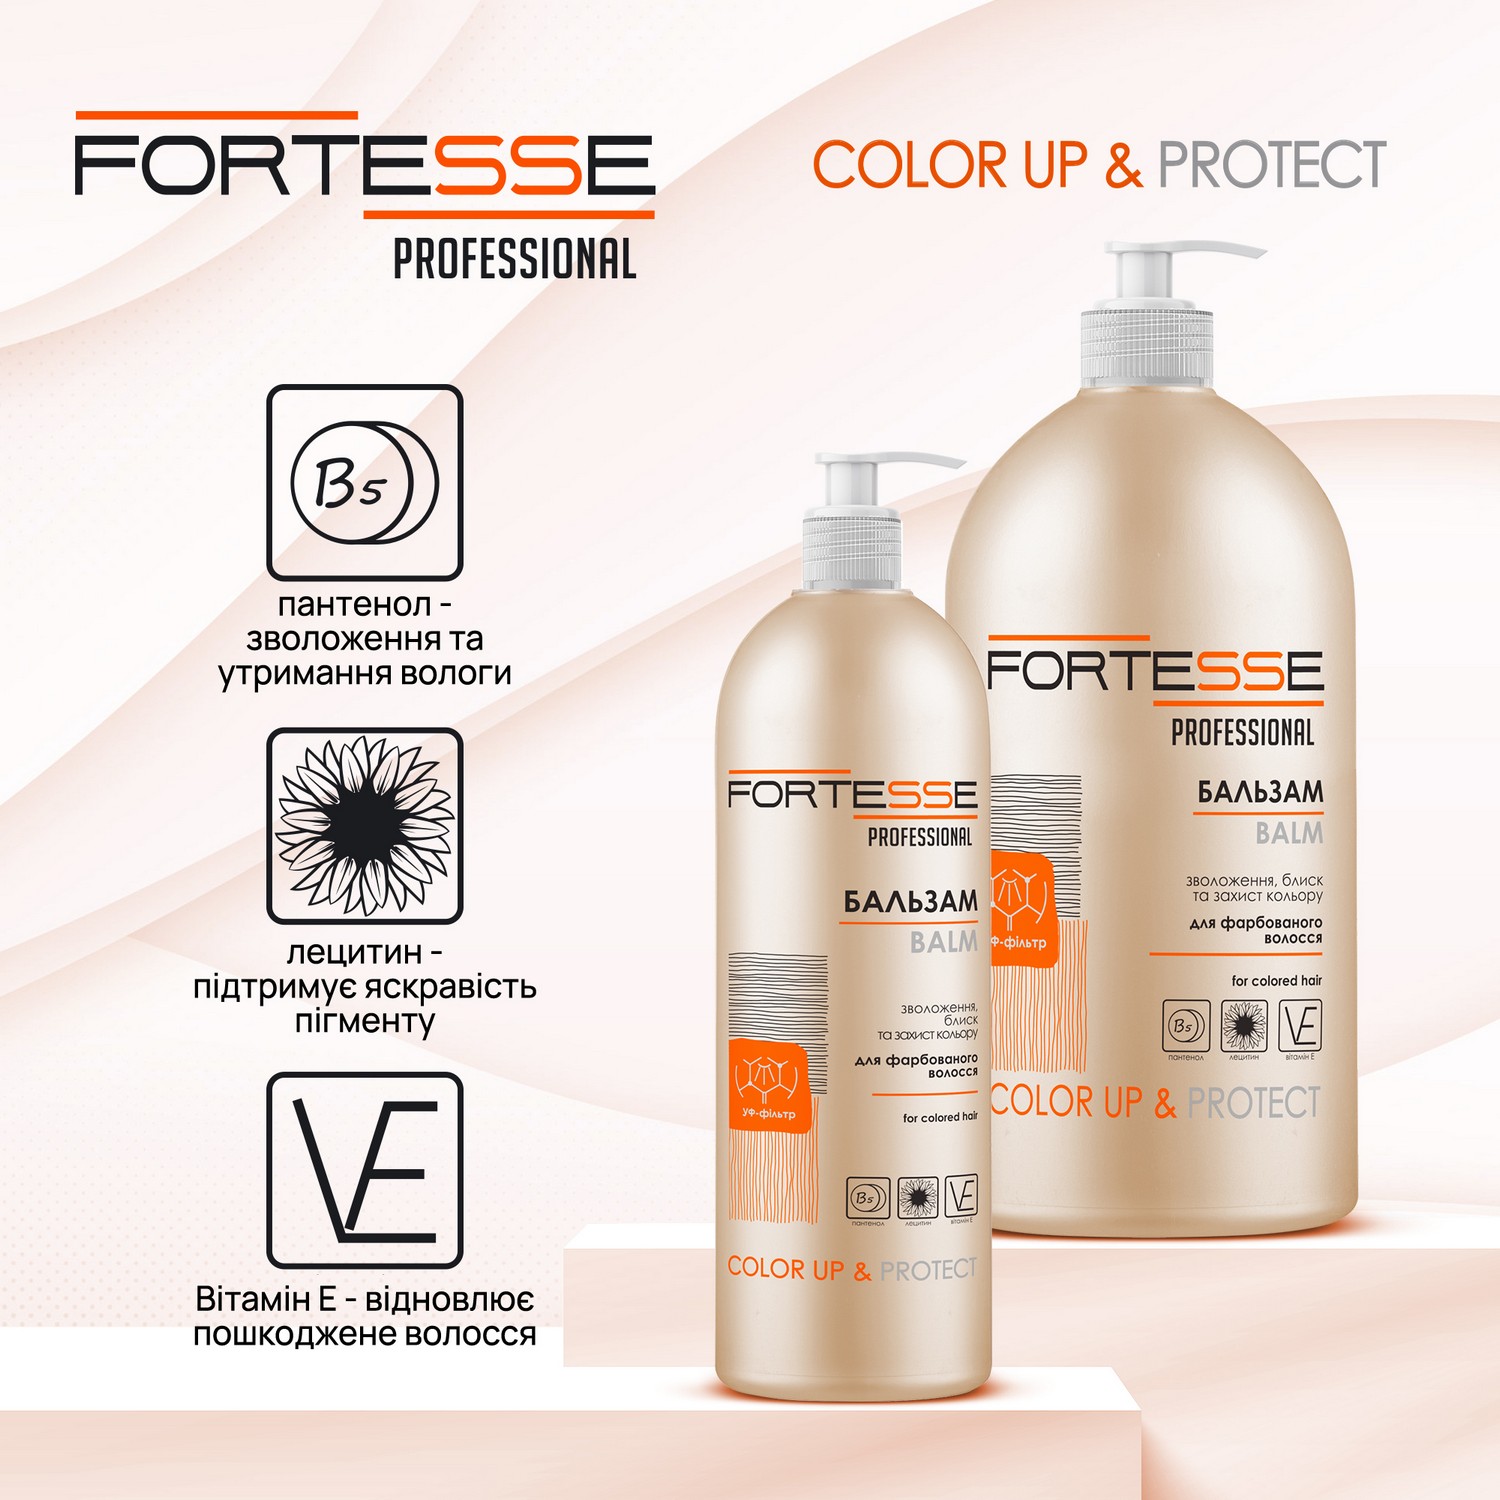 Бальзам Fortesse Professional Color Up & Protect Стойкость цвета, для окрашенных волос, с дозатором, 400 мл - фото 2